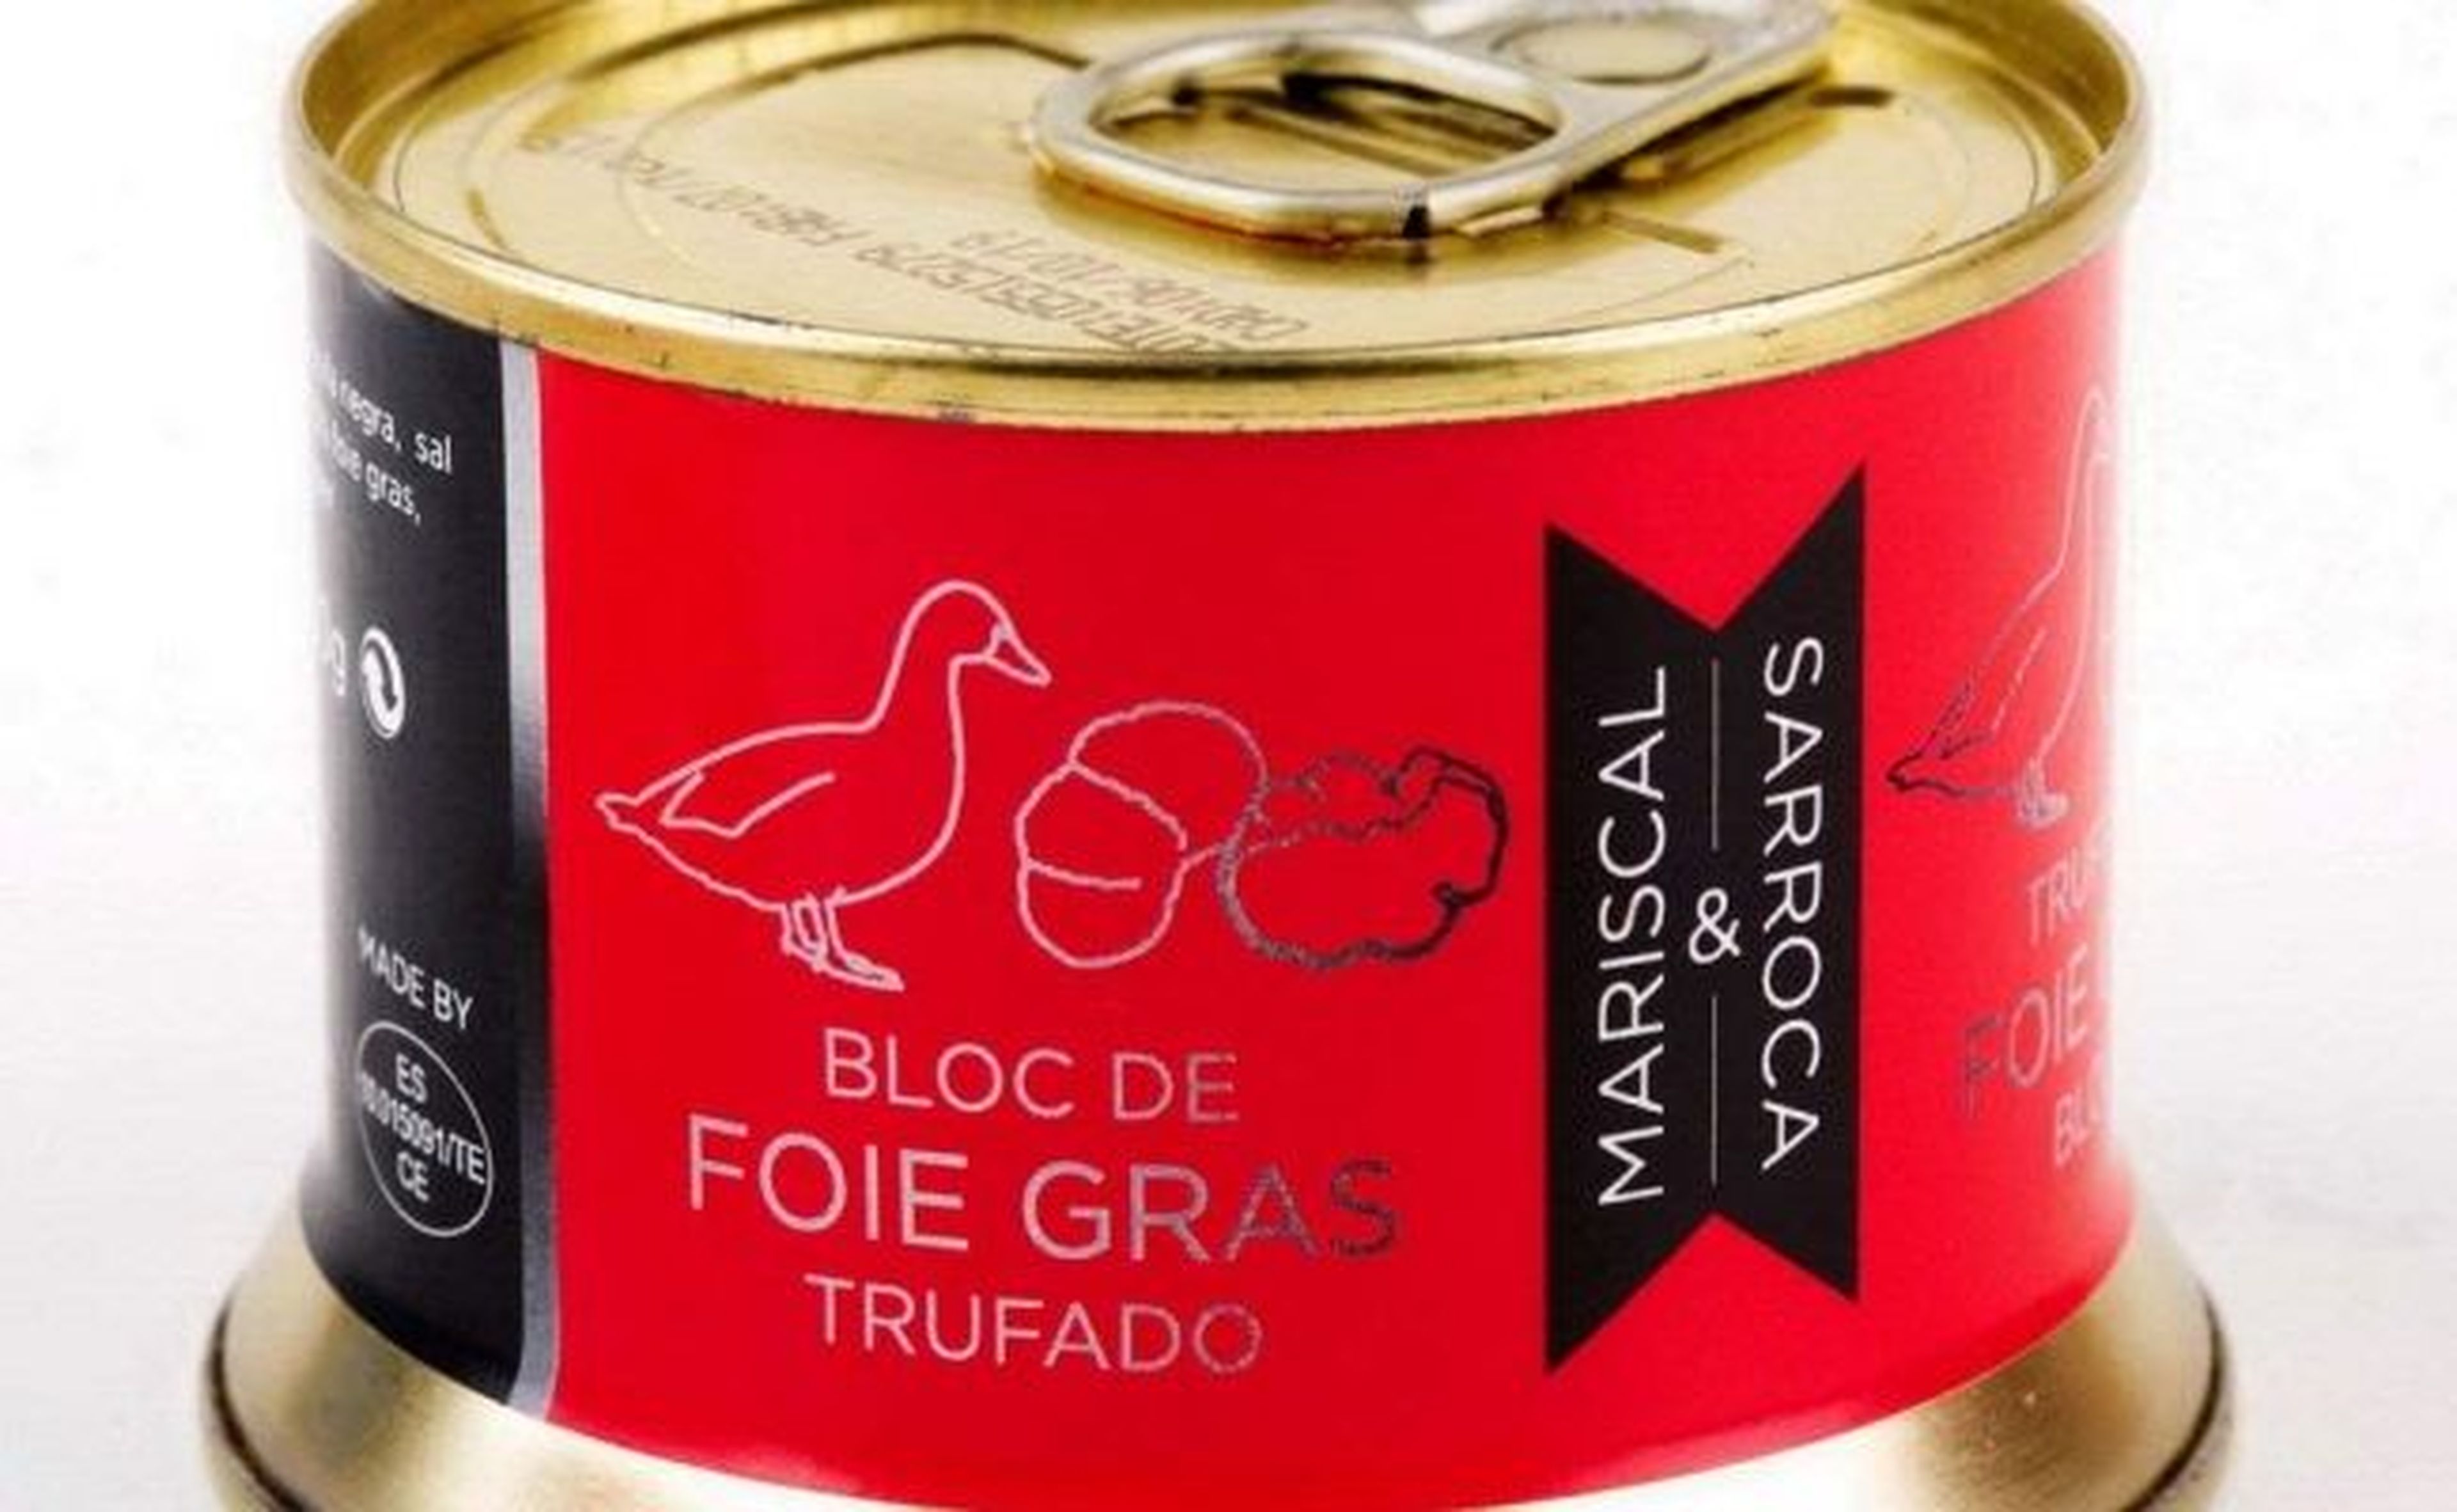 Foie grass Amazon